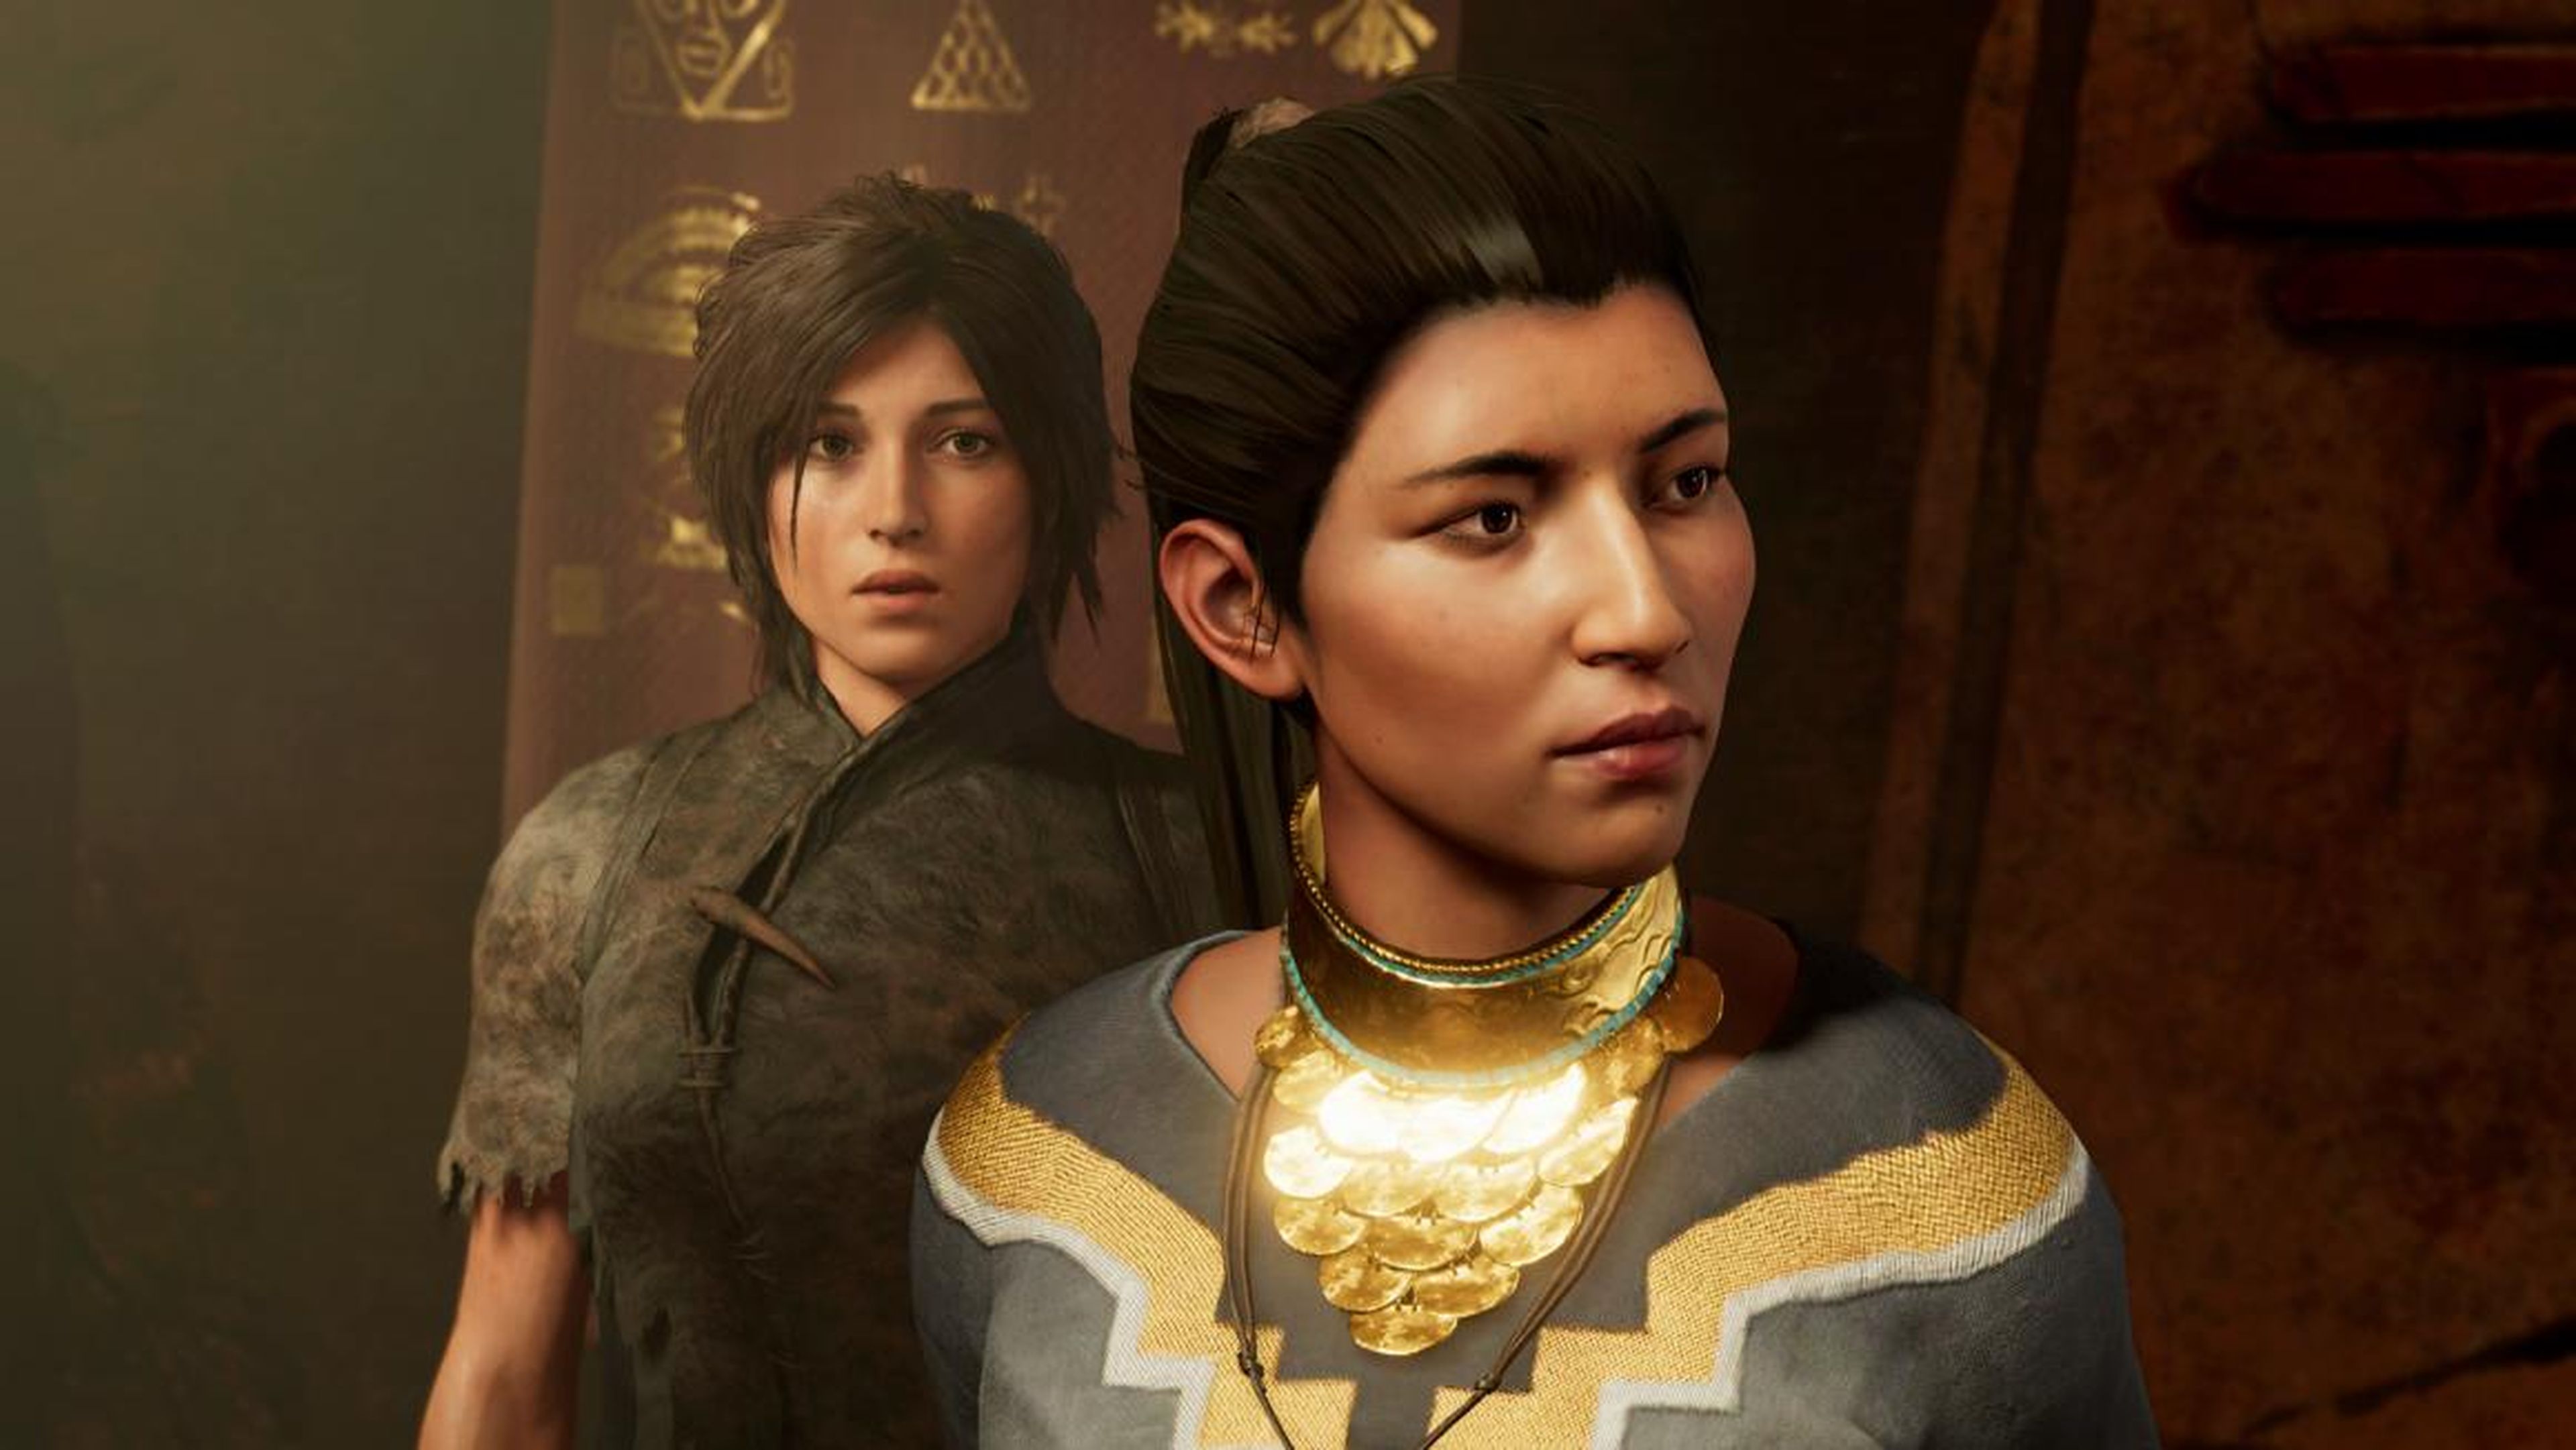 La nueva trilogía "Tomb Raider" trabaja para disipar los estereotipos que siguieron a la protagonista Lara Croft durante años.